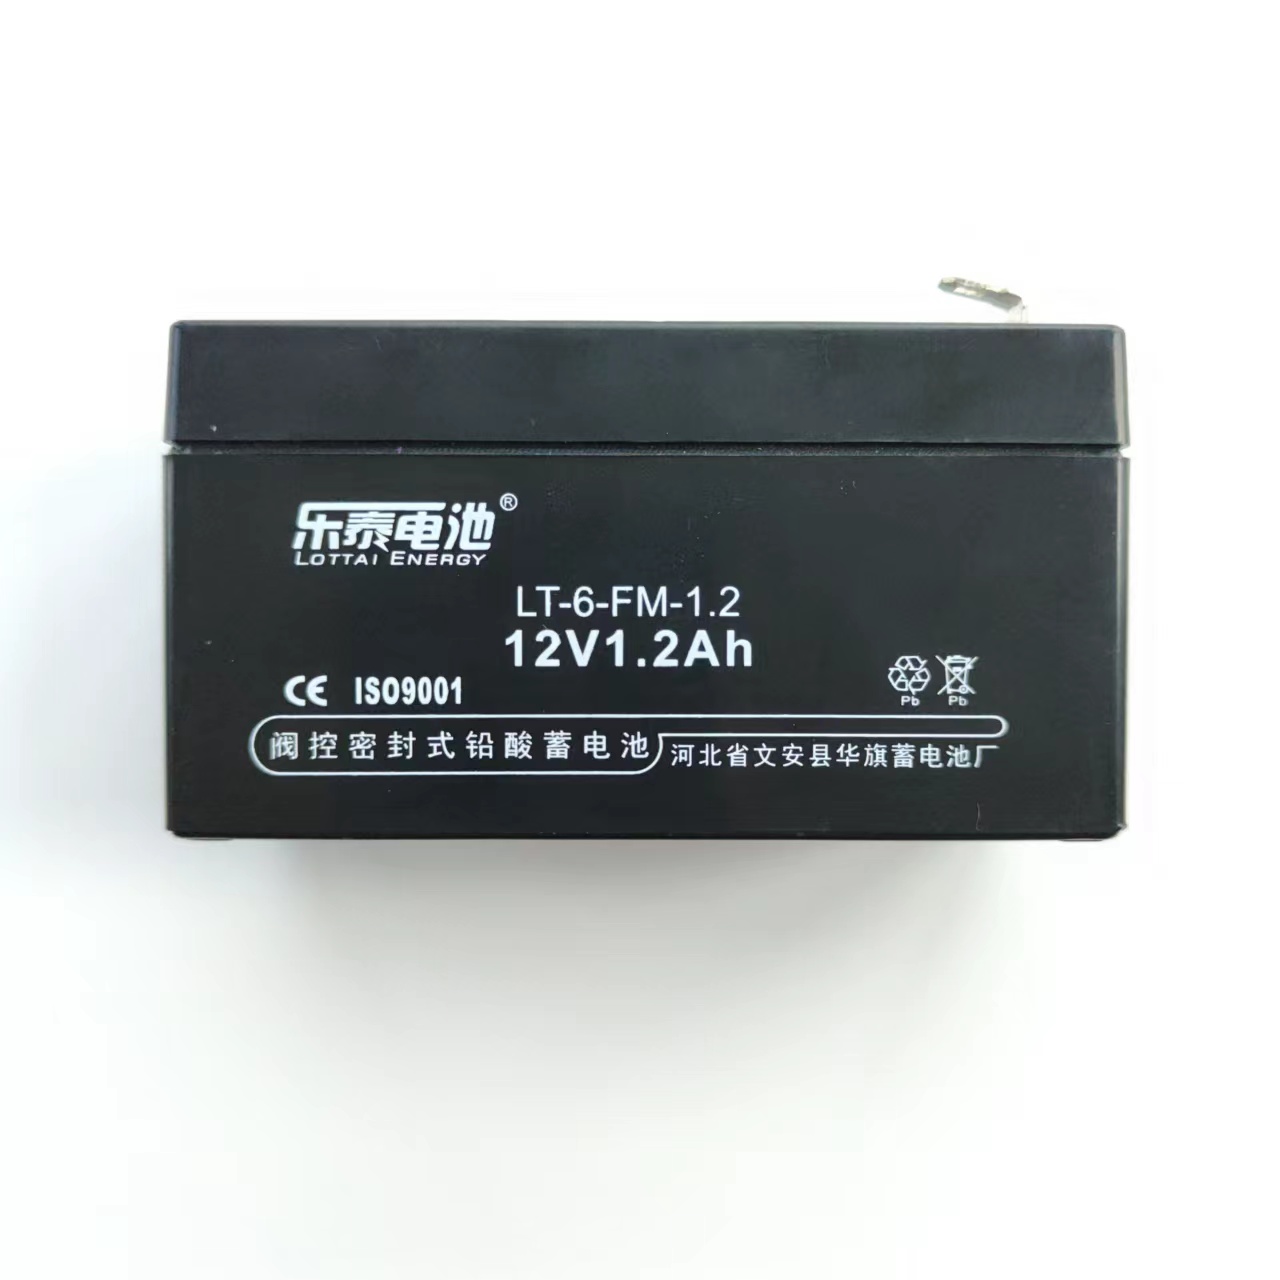 LT-6-FM-1.2乐泰防火卷帘电池